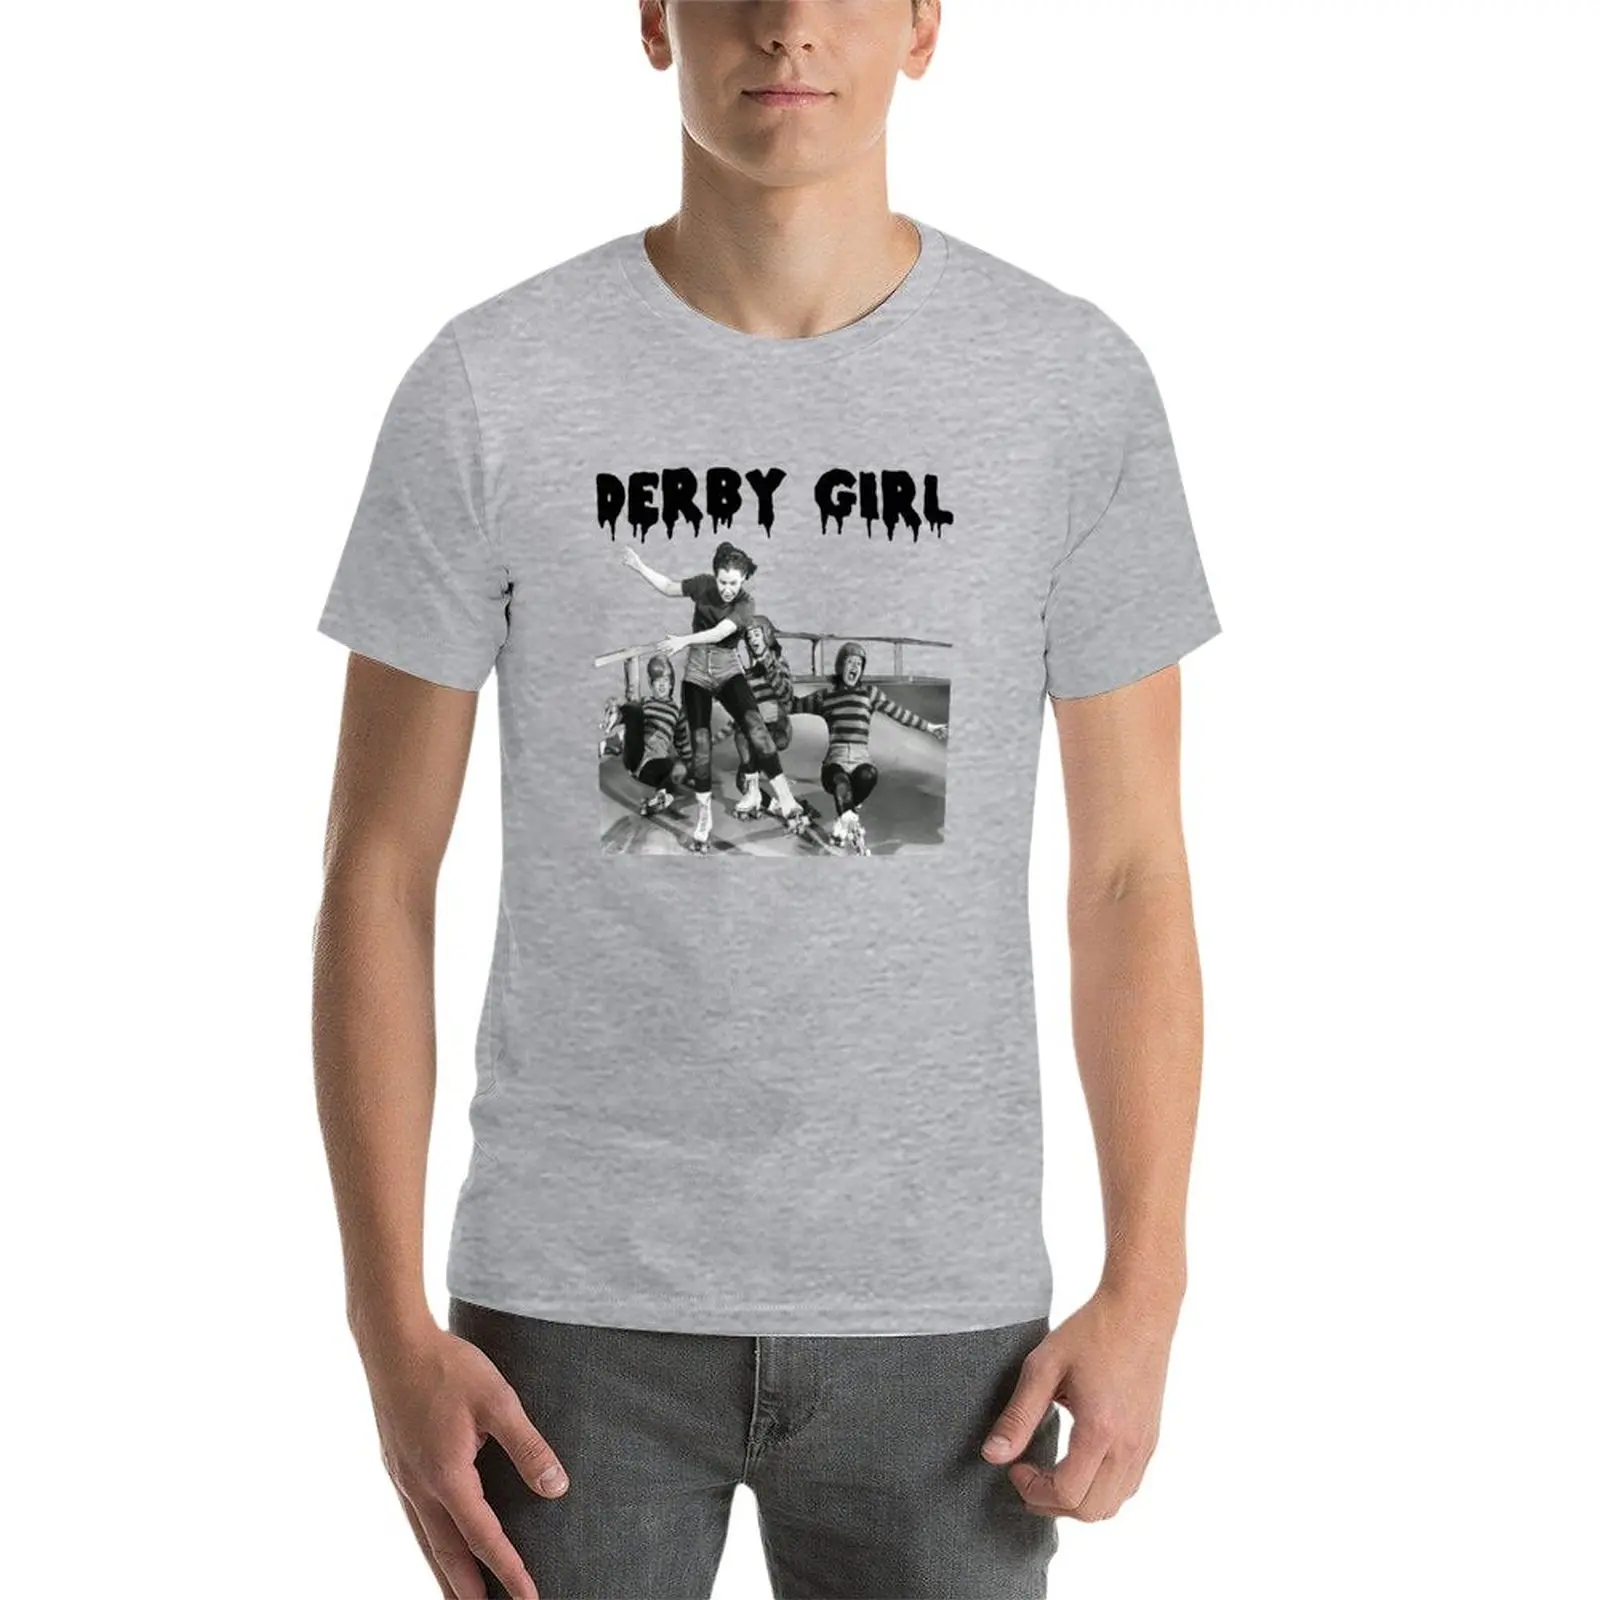 DERBY GIRL ROLLERSKATE Винтажная футболка ROLLERDERBY Джерри Мюррея, мужская одежда, милые топы, футболки оверсайз, мужские футболки Изображение 2